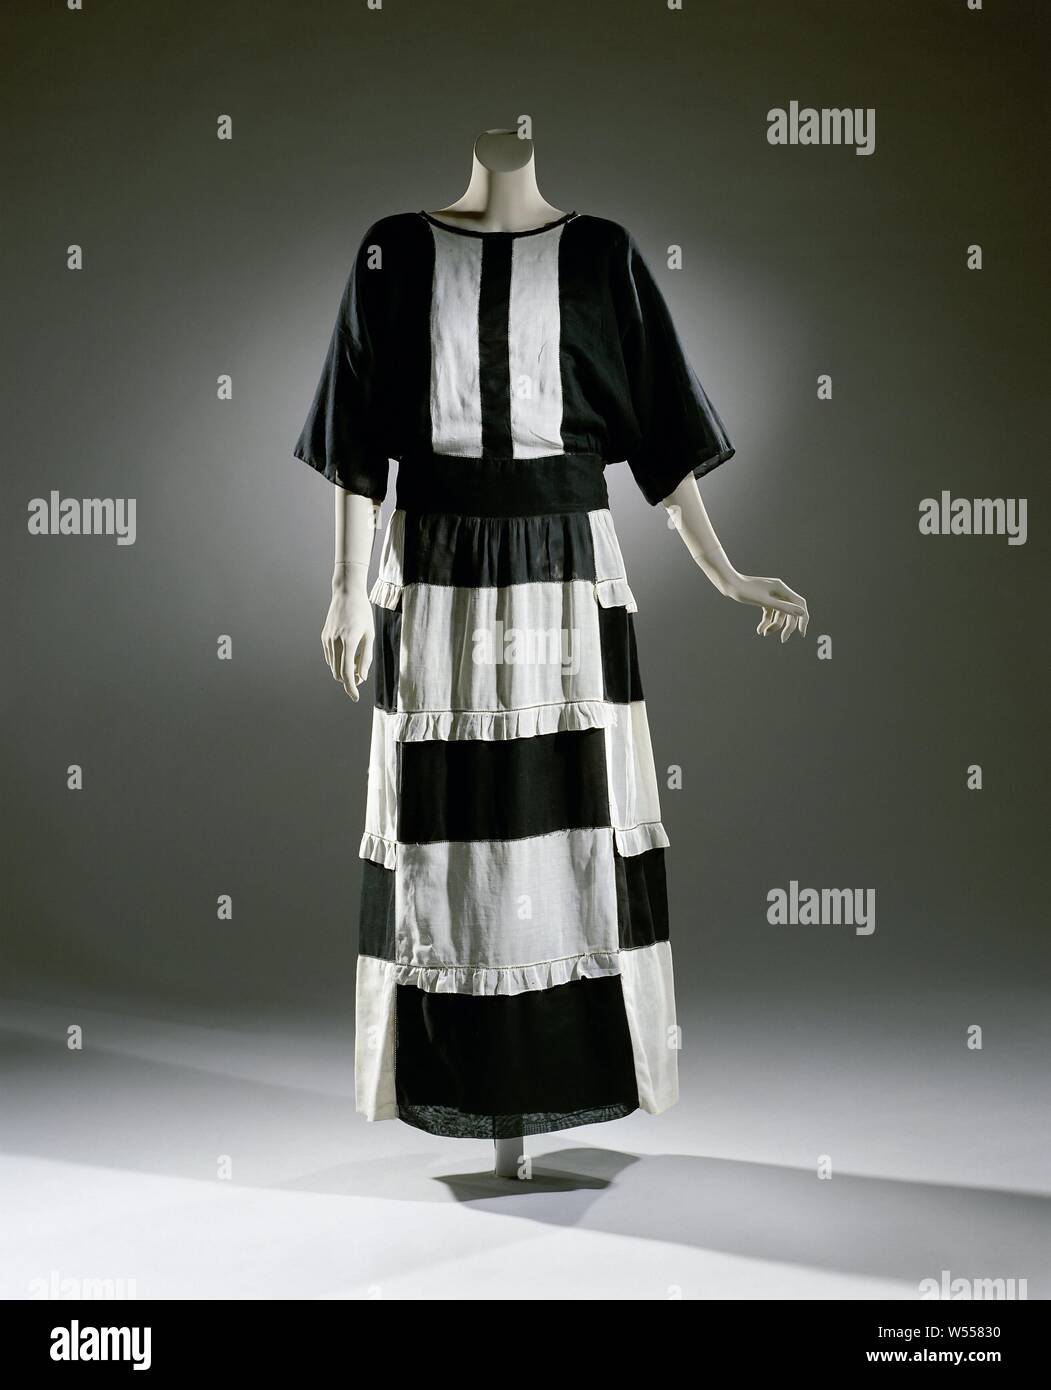 Robe composée de blocs de voile noir et blanc, une robe composée de blocs de noir et blanc voile., Hirsch & Cie S.A. (Peut-être), Amsterdam, ch. 1914 - c. 1918, le coton (textile), h 139 cm Banque D'Images